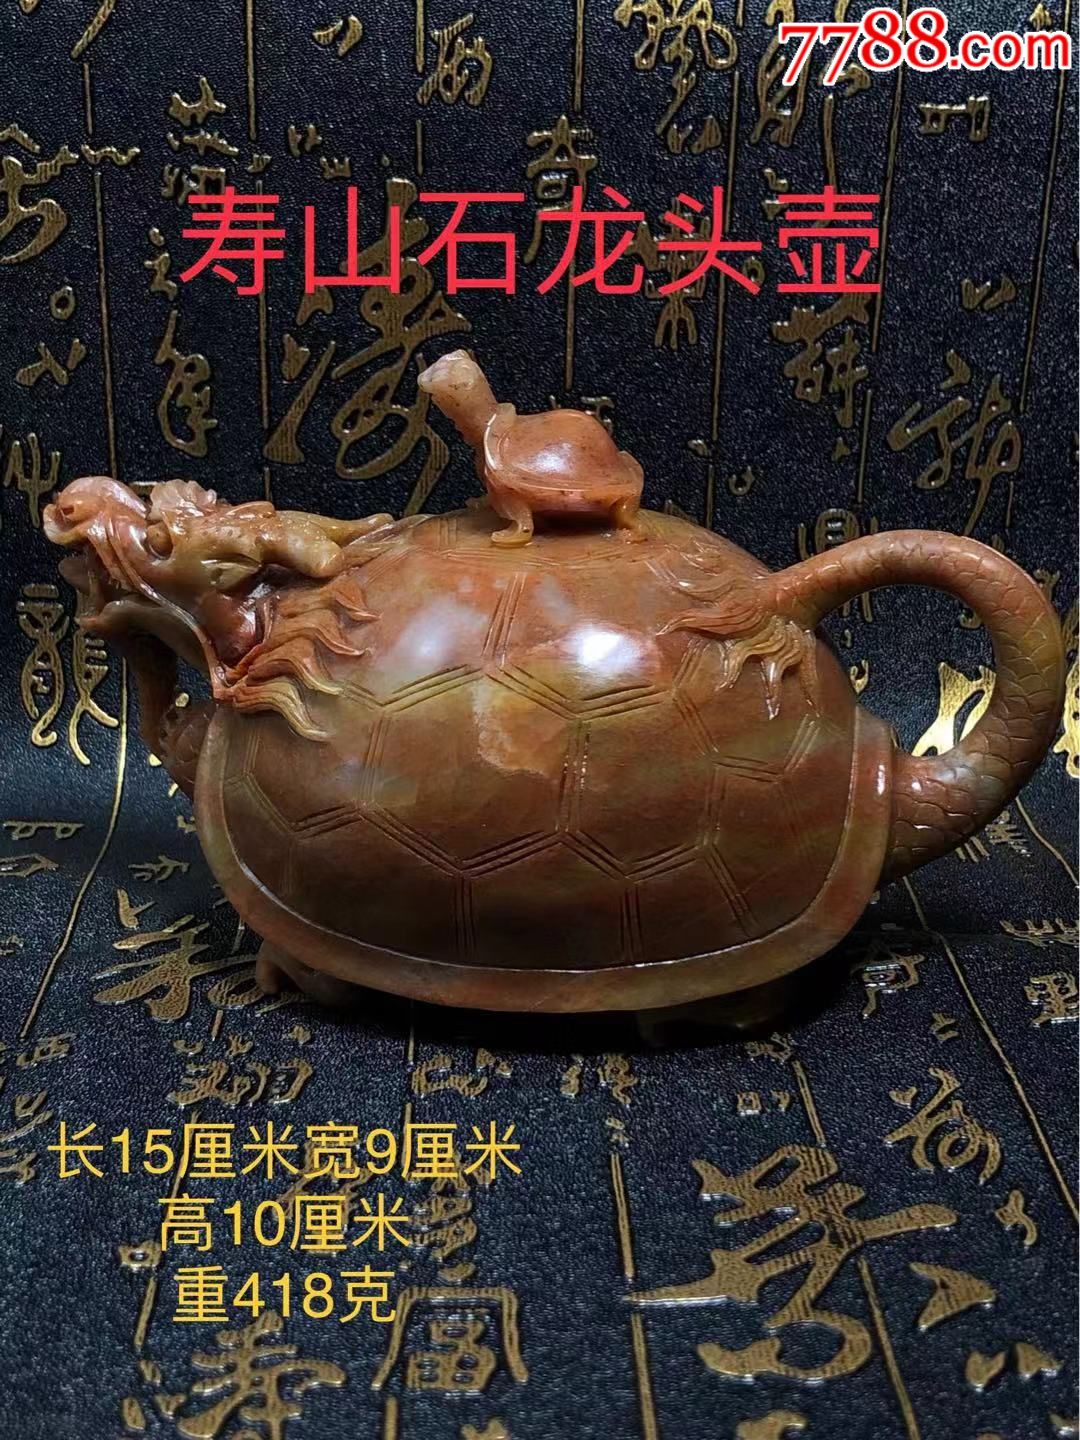 清代寿山石龙头壶选料上乘雕刻精美器形独特纯手工制作精工细作料子油